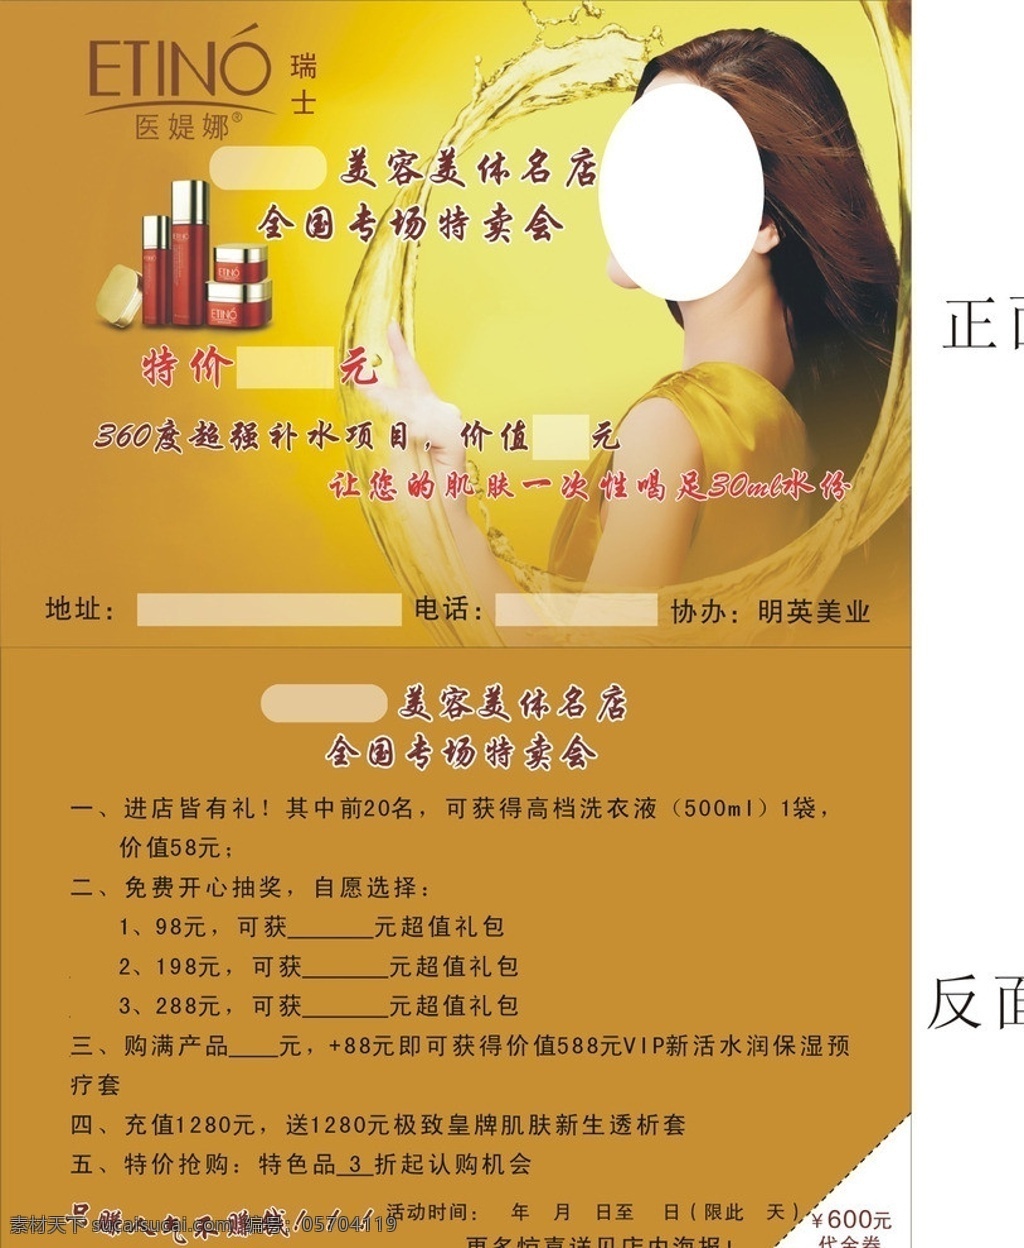 宣传折页 化妆品 宣传单 美容美体 医媞娜 宣传海报 杂志 dm 宣传广告 矢量 其他设计